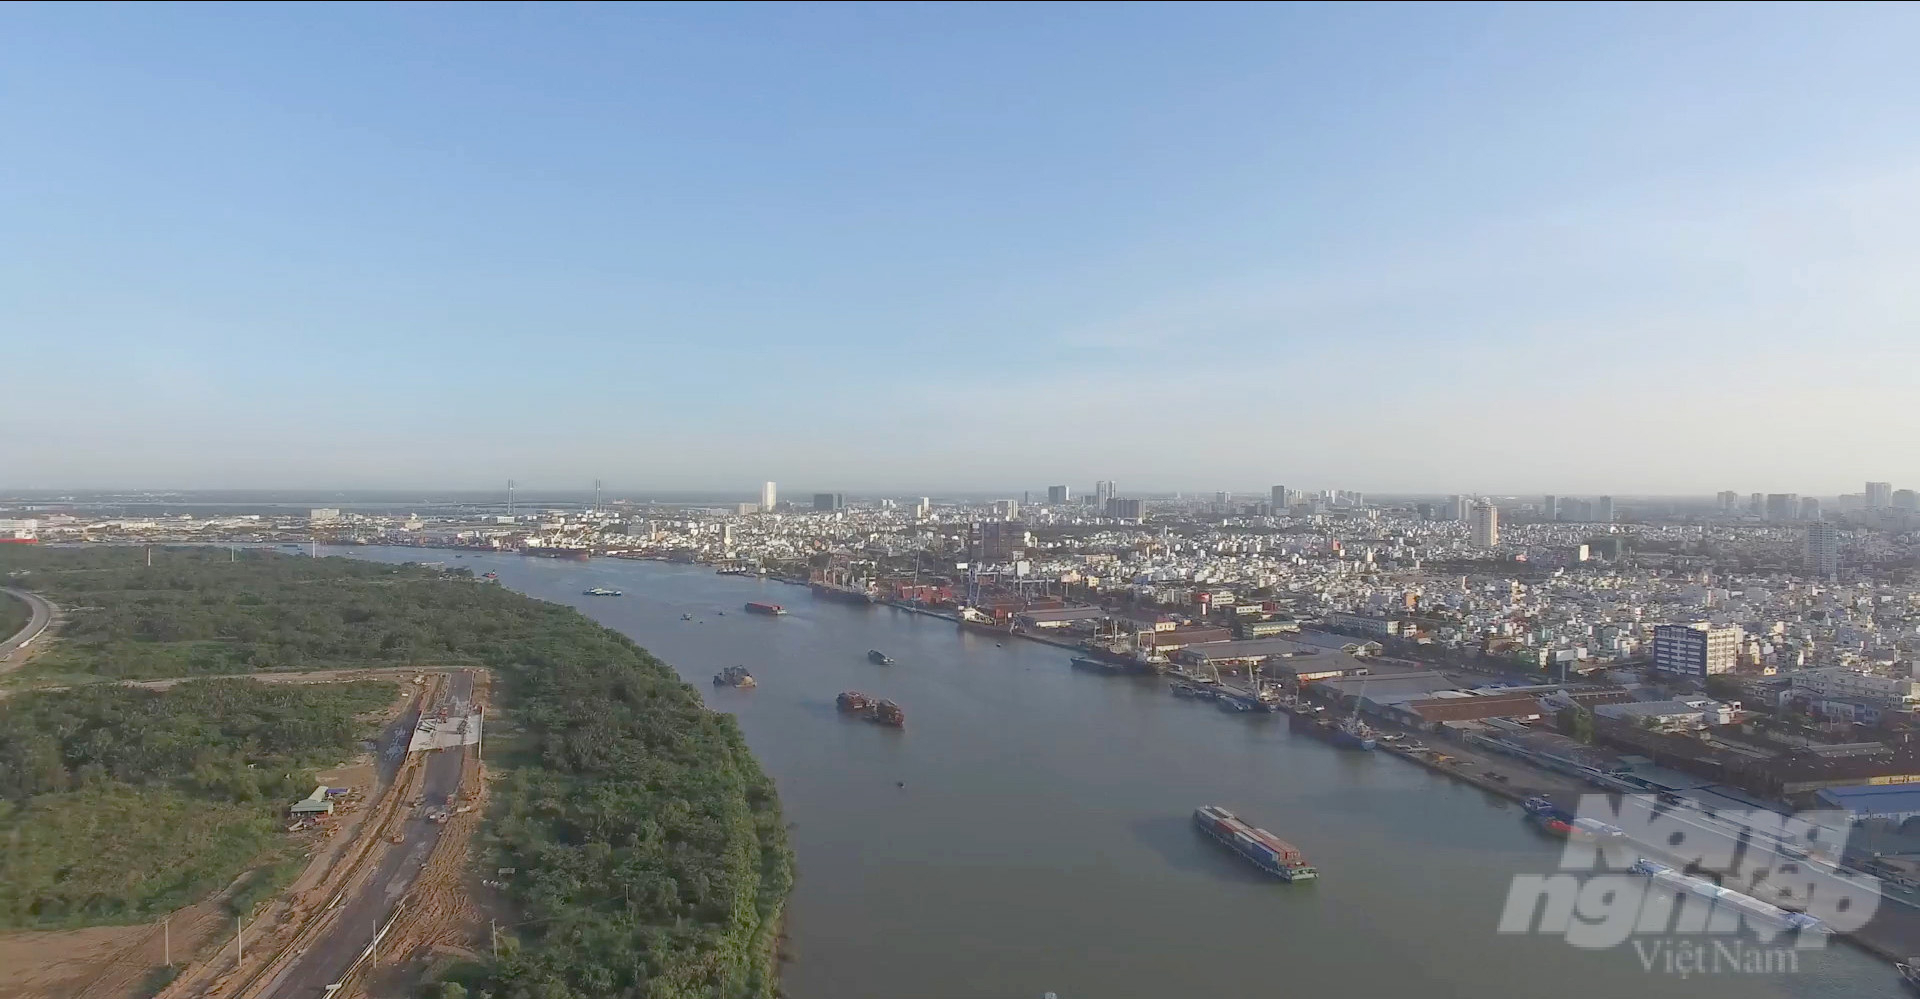 Sông Sài Gòn đang phát huy rất tốt mảng giao thông vận tải đường thủy nhưng chưa thể tận dụng được các tiềm năng khác. Ảnh: Lê Bình.